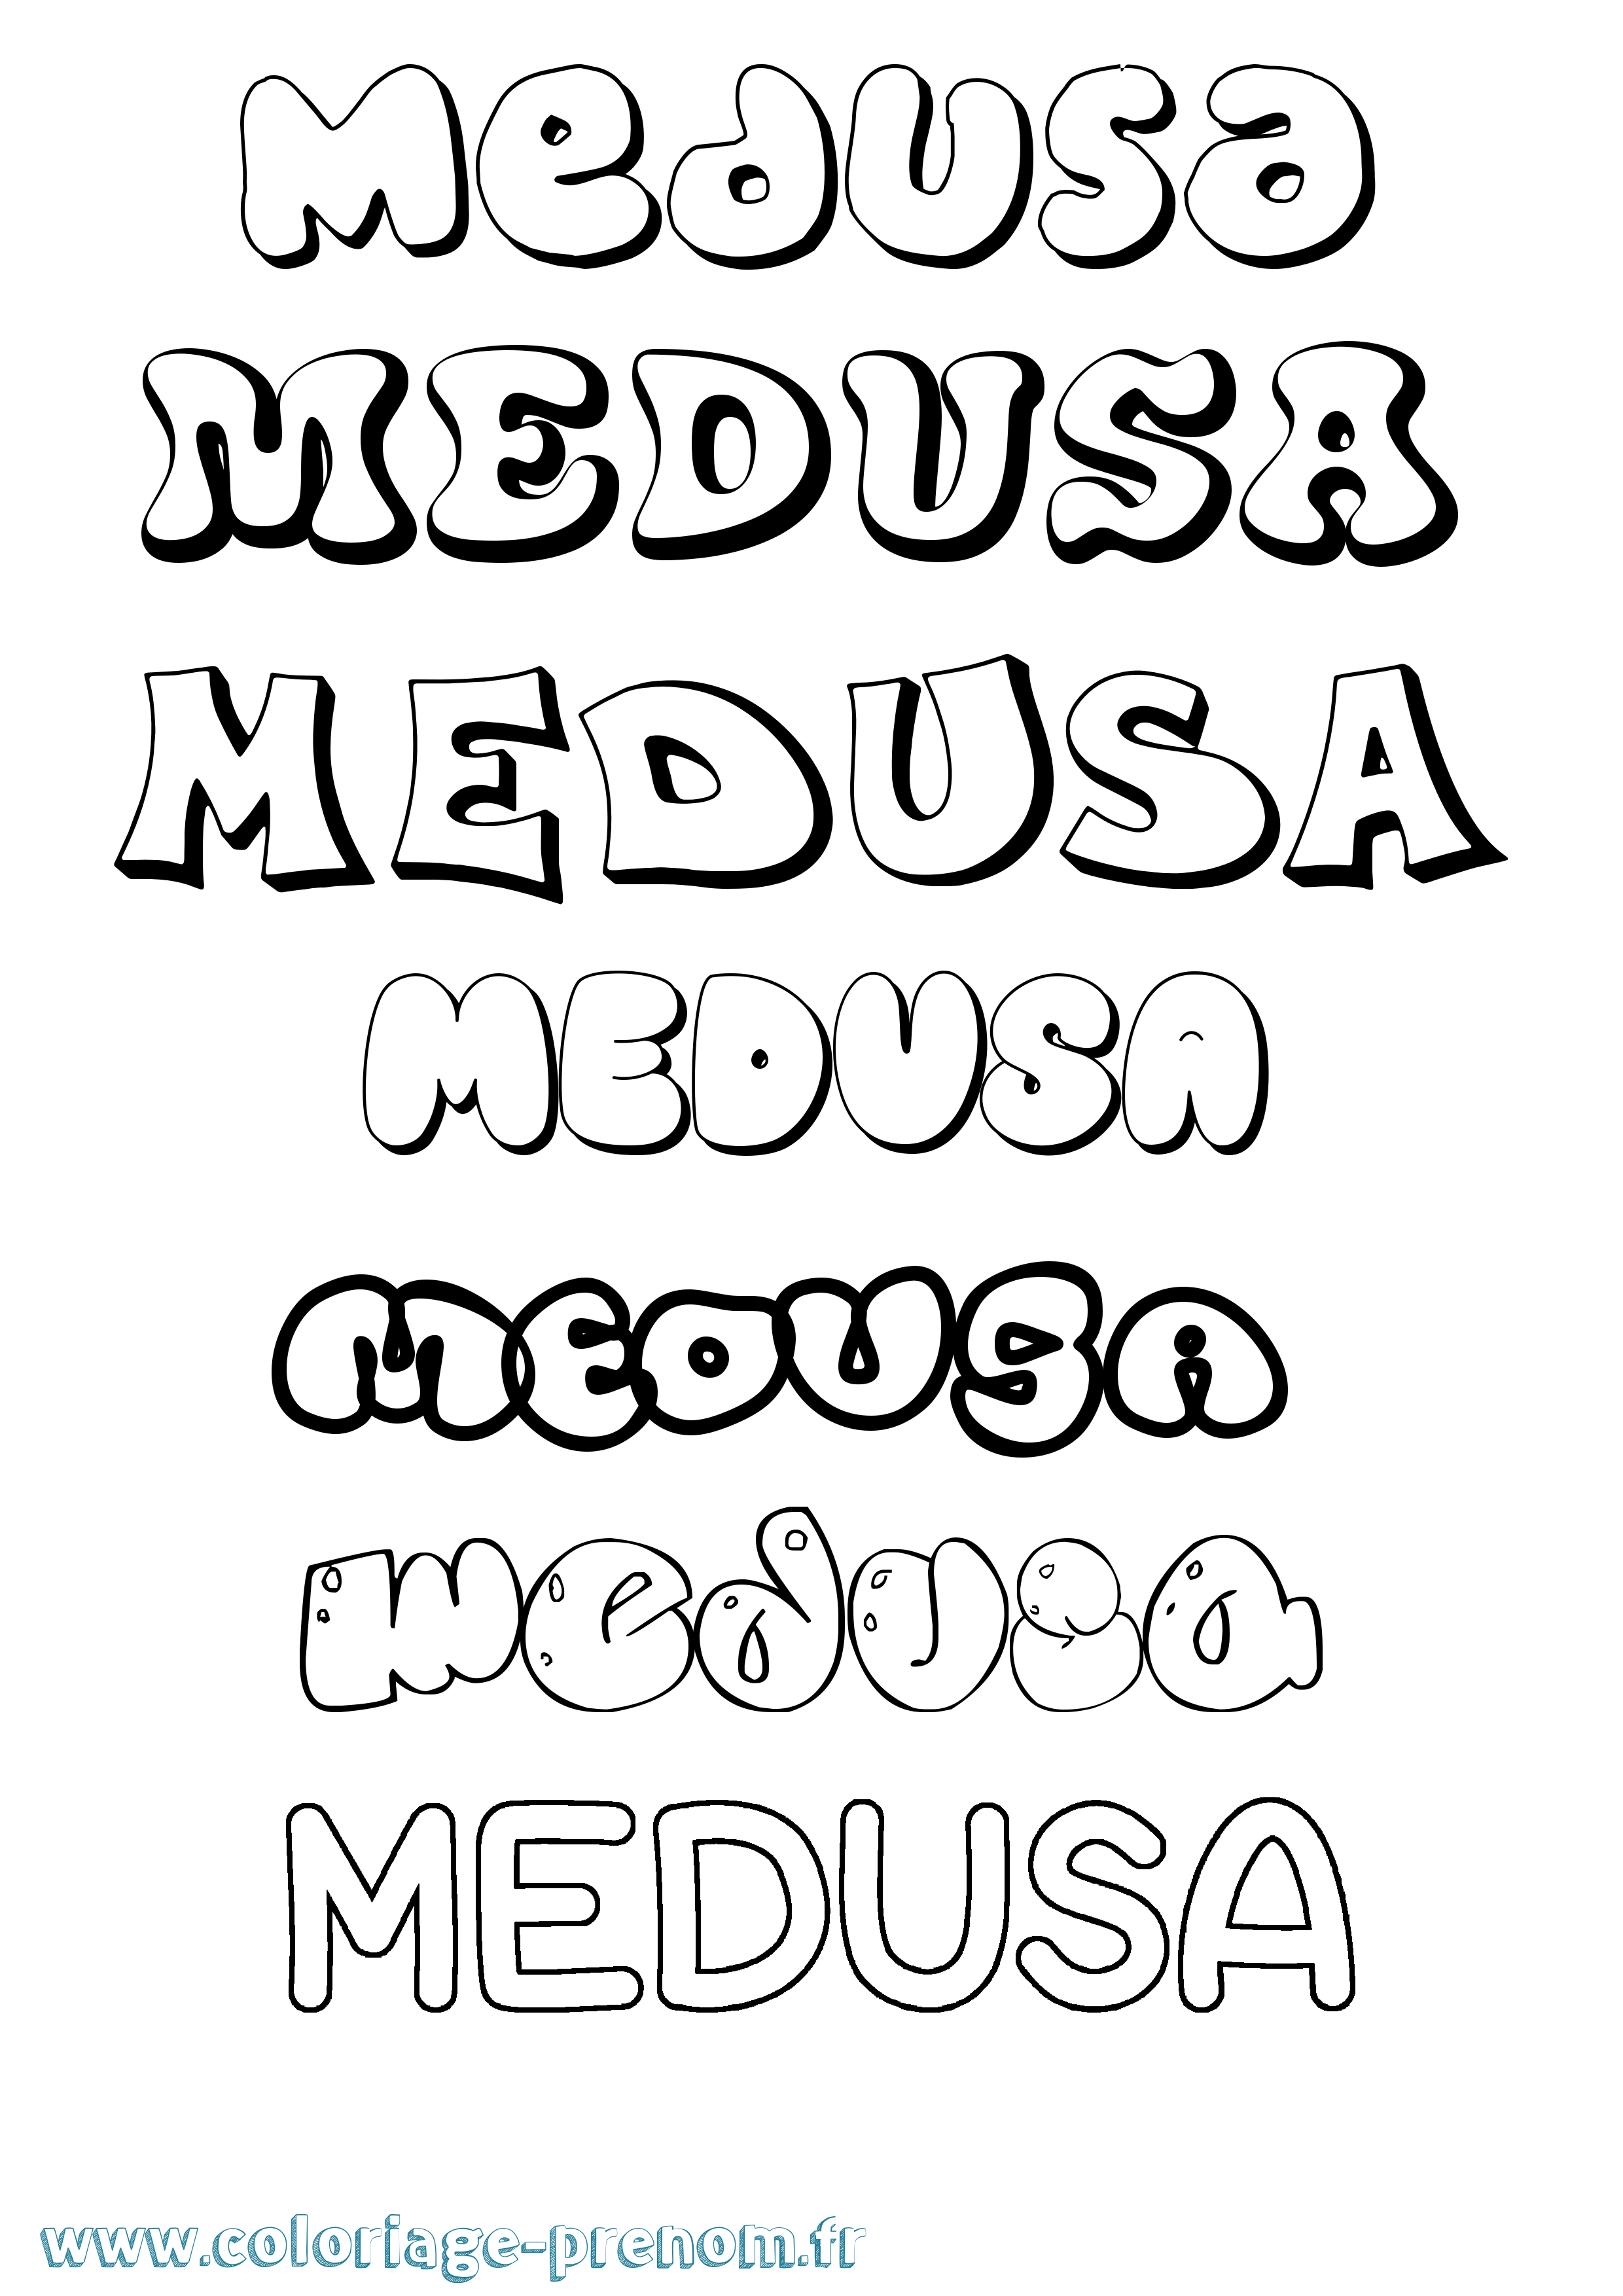 Coloriage prénom Medusa Bubble